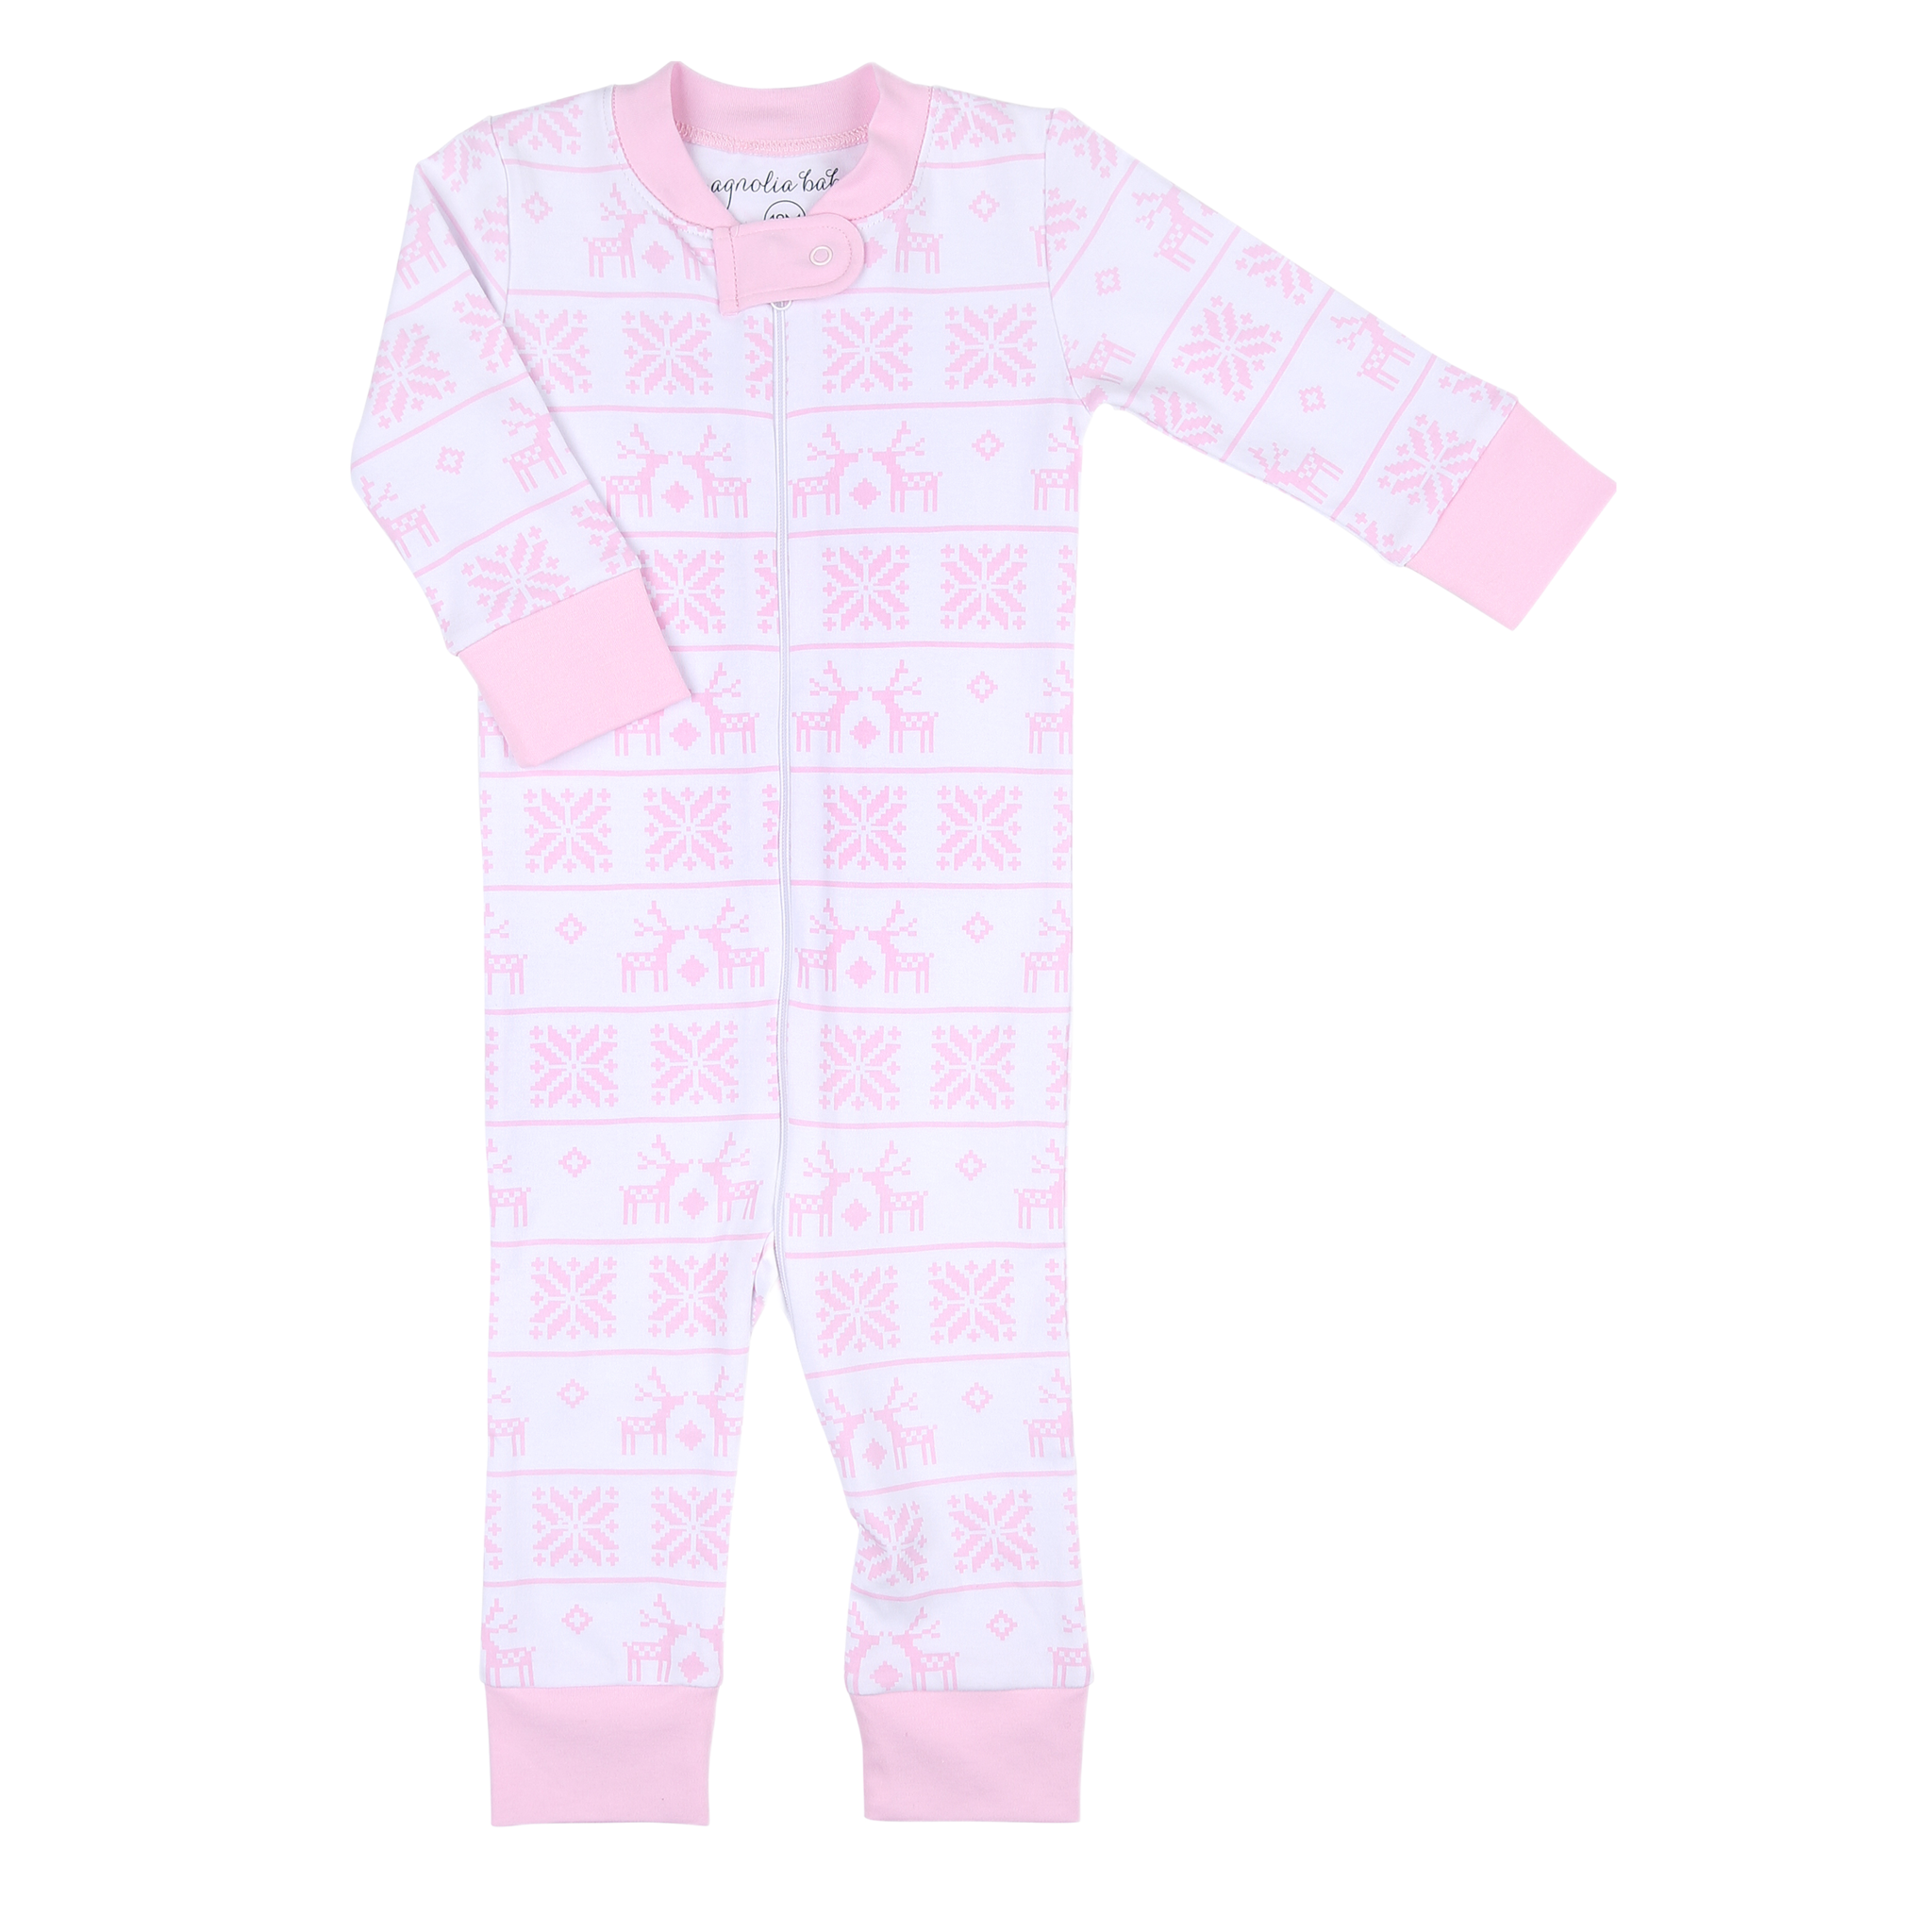 Magnolia Baby It's My Birthday Pajamas - Pink - Long